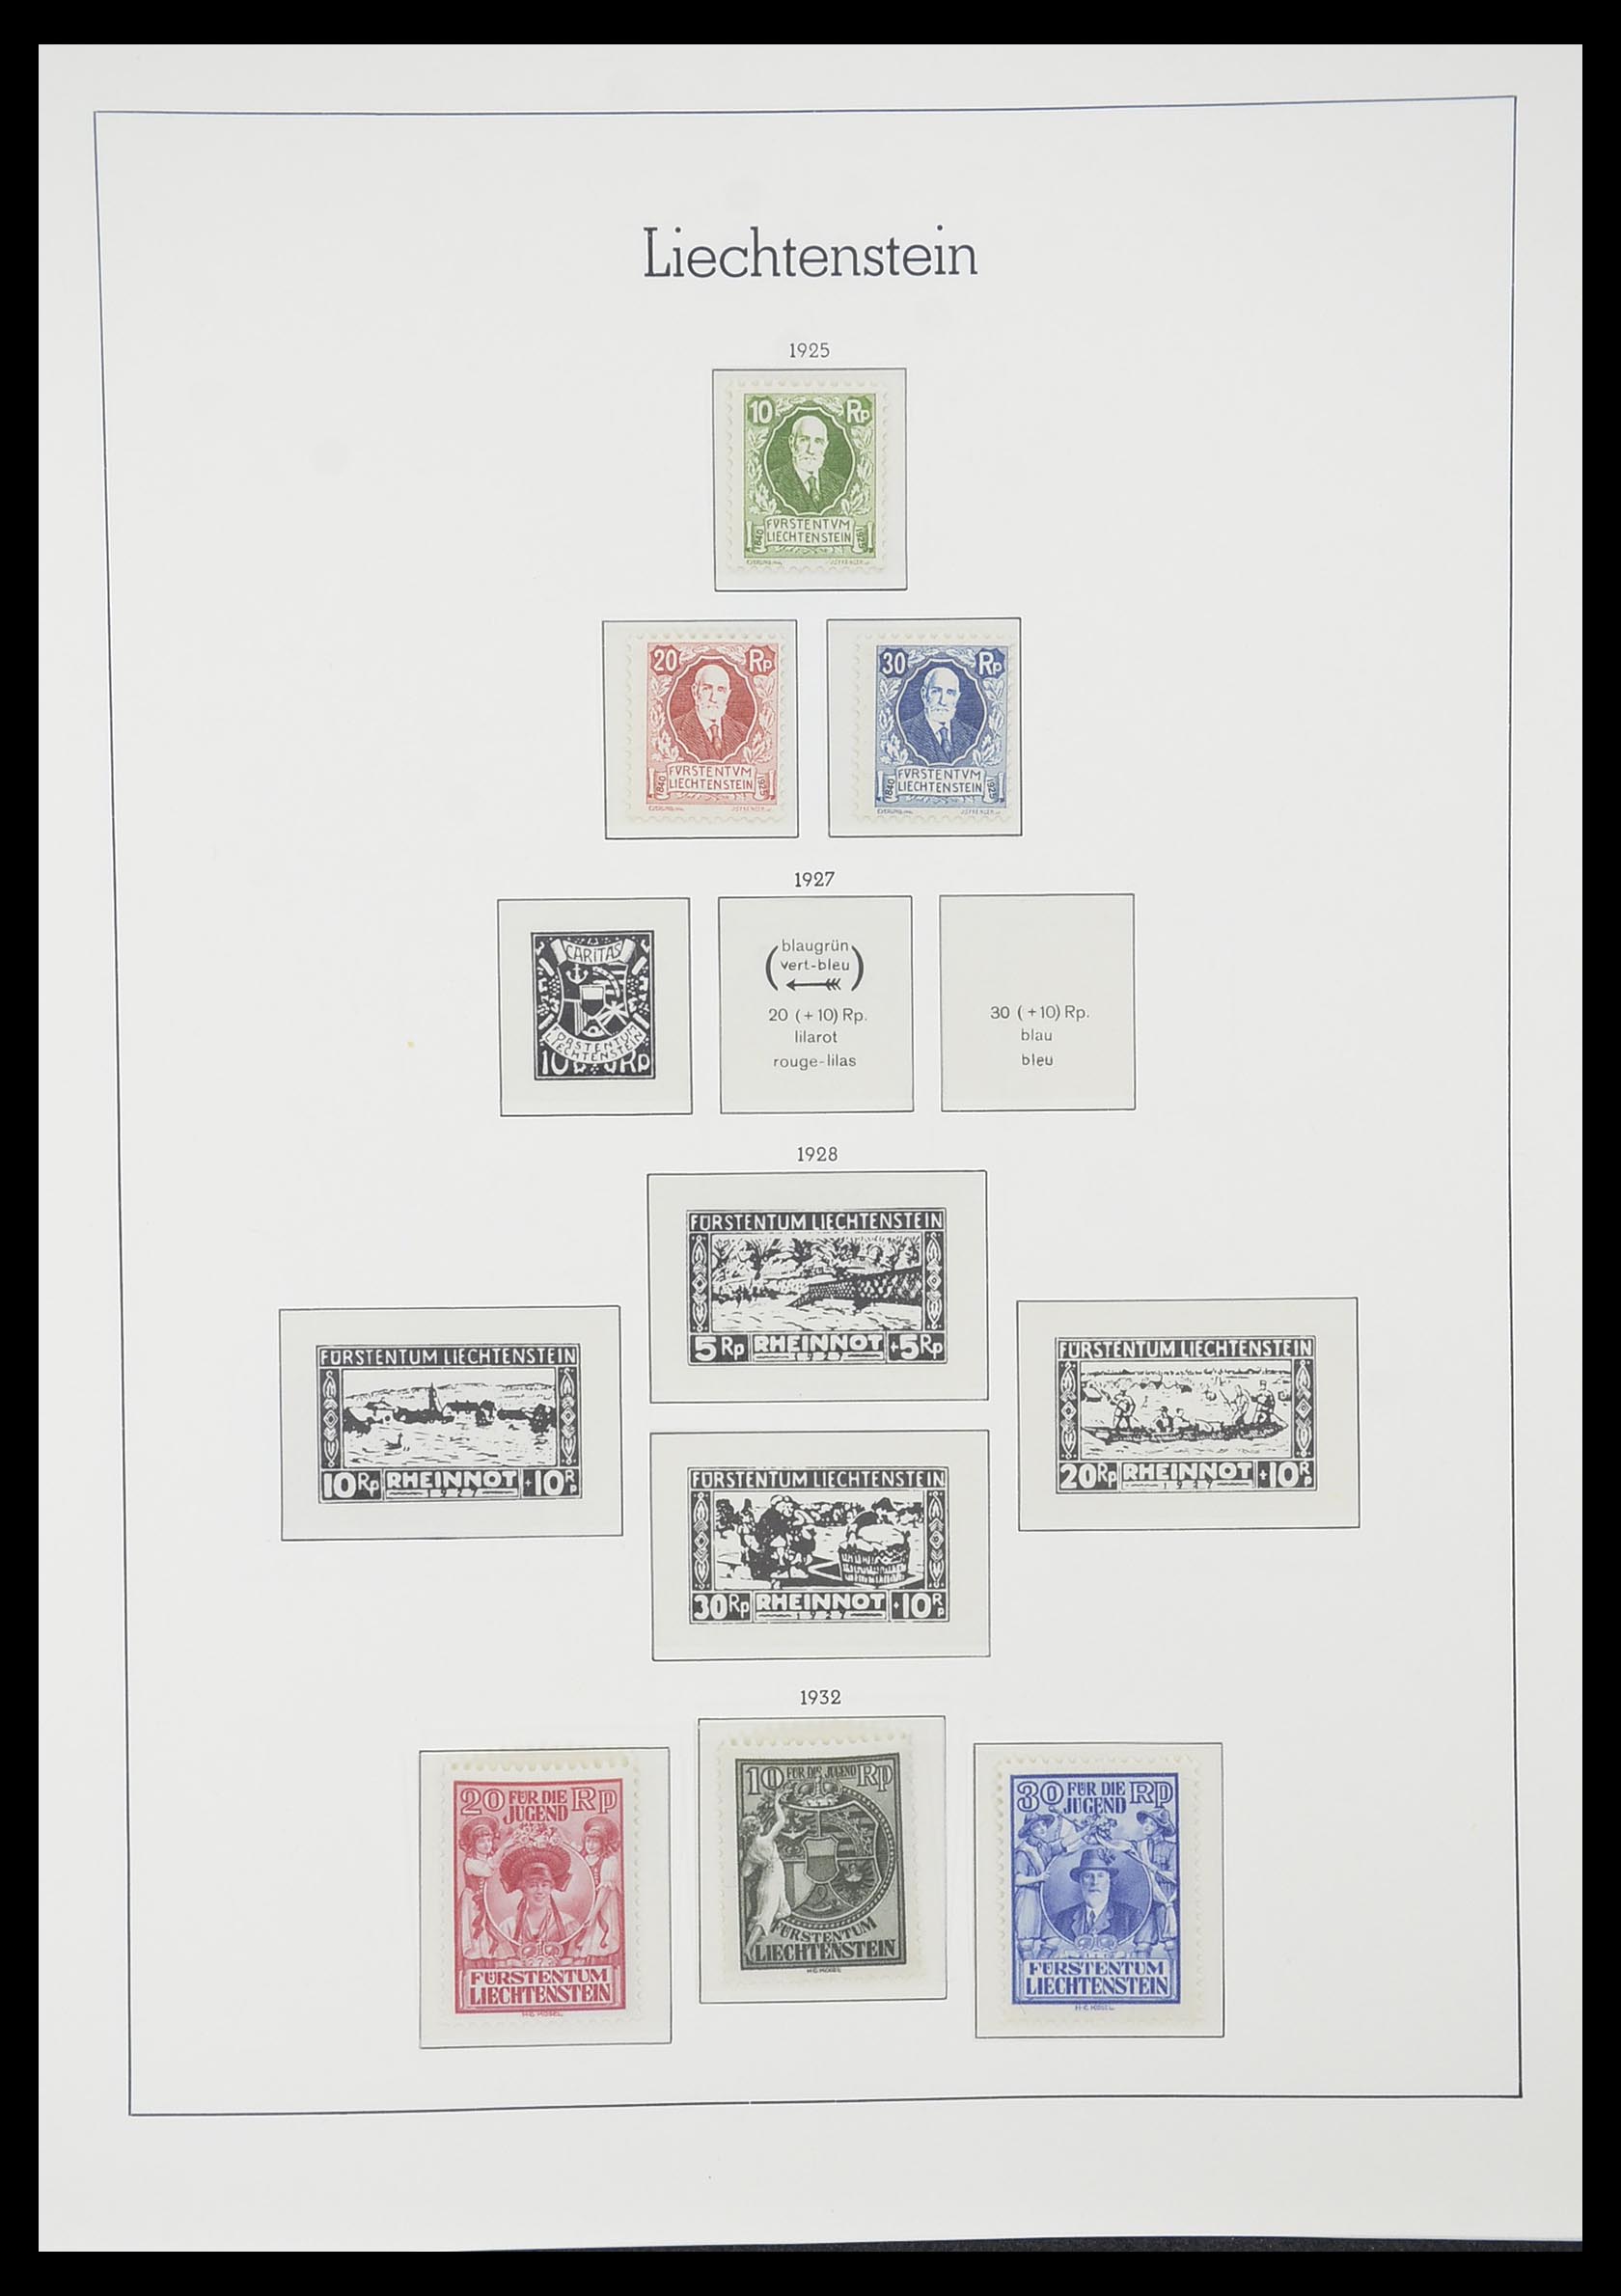 33825 009 - Stamp collection 33825 Liechtenstein 1912-1997.